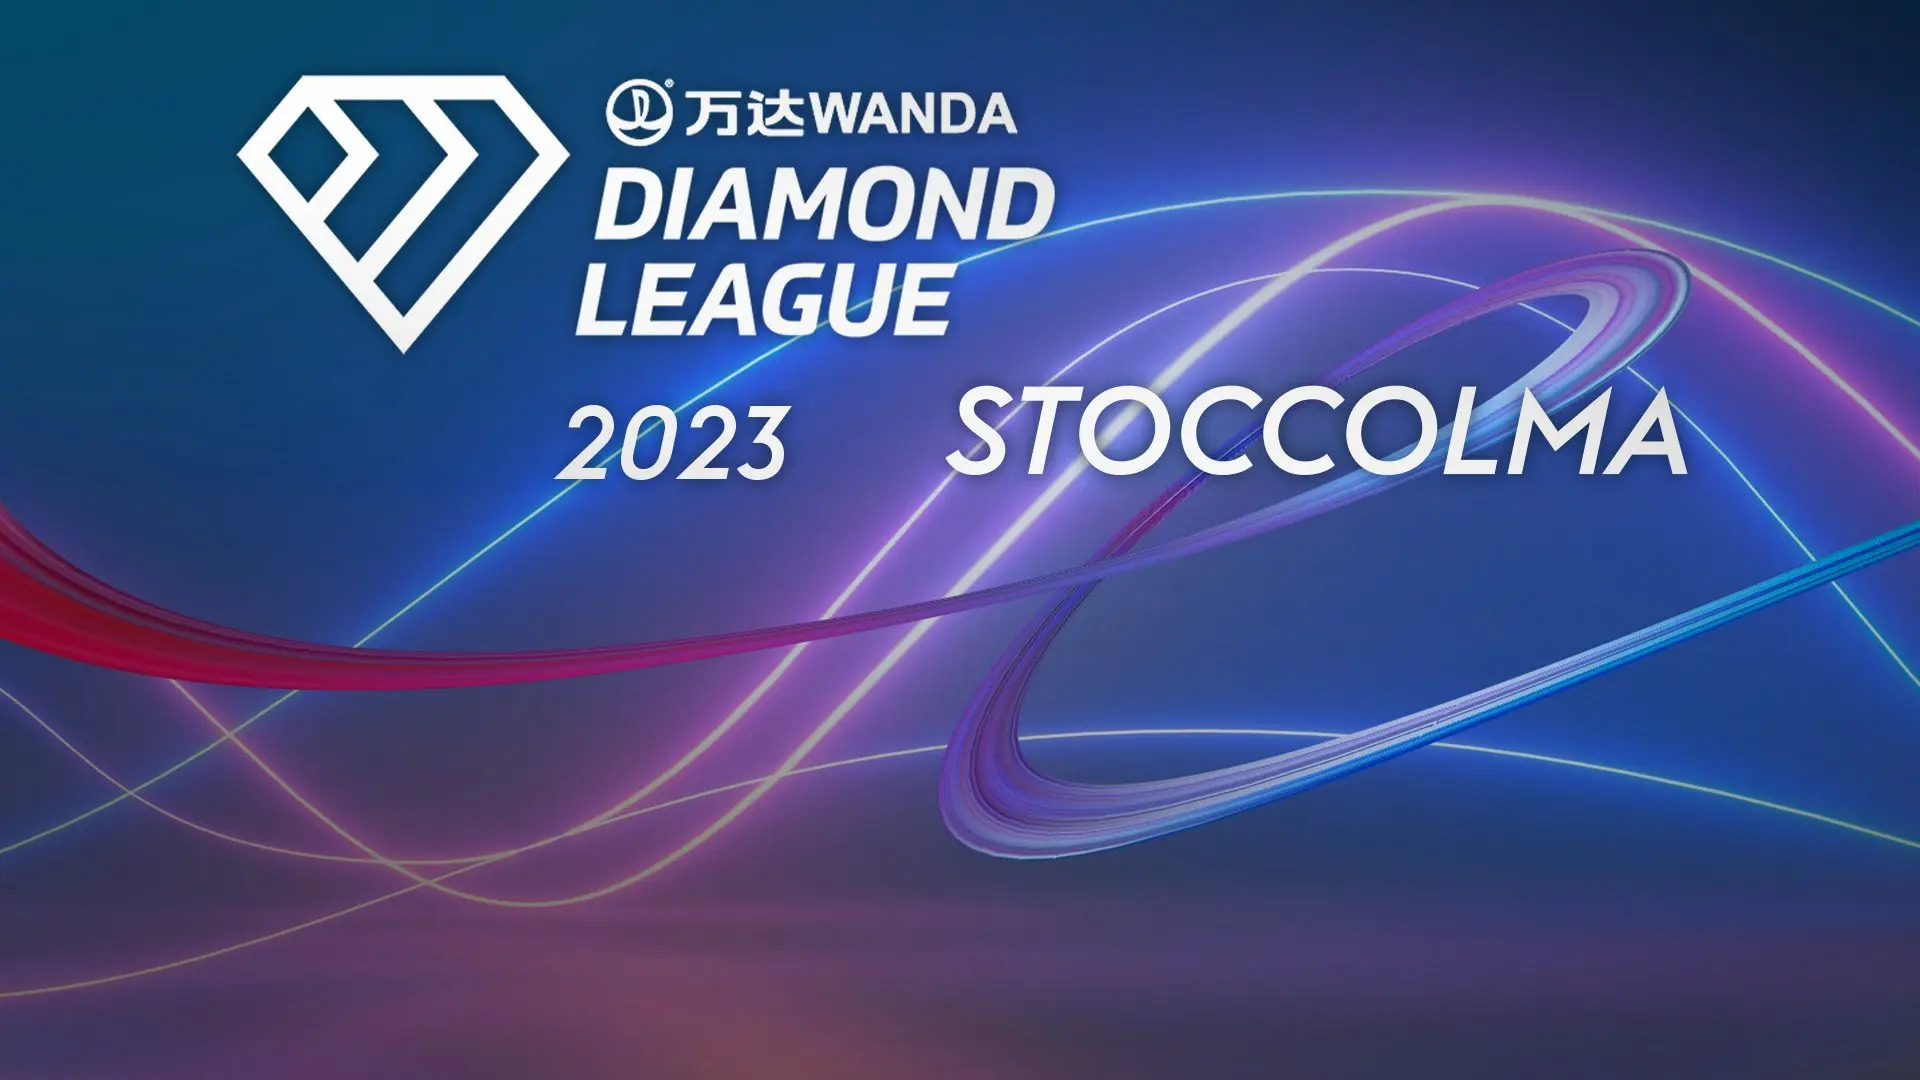 Diamond League 2023 Stoccolma